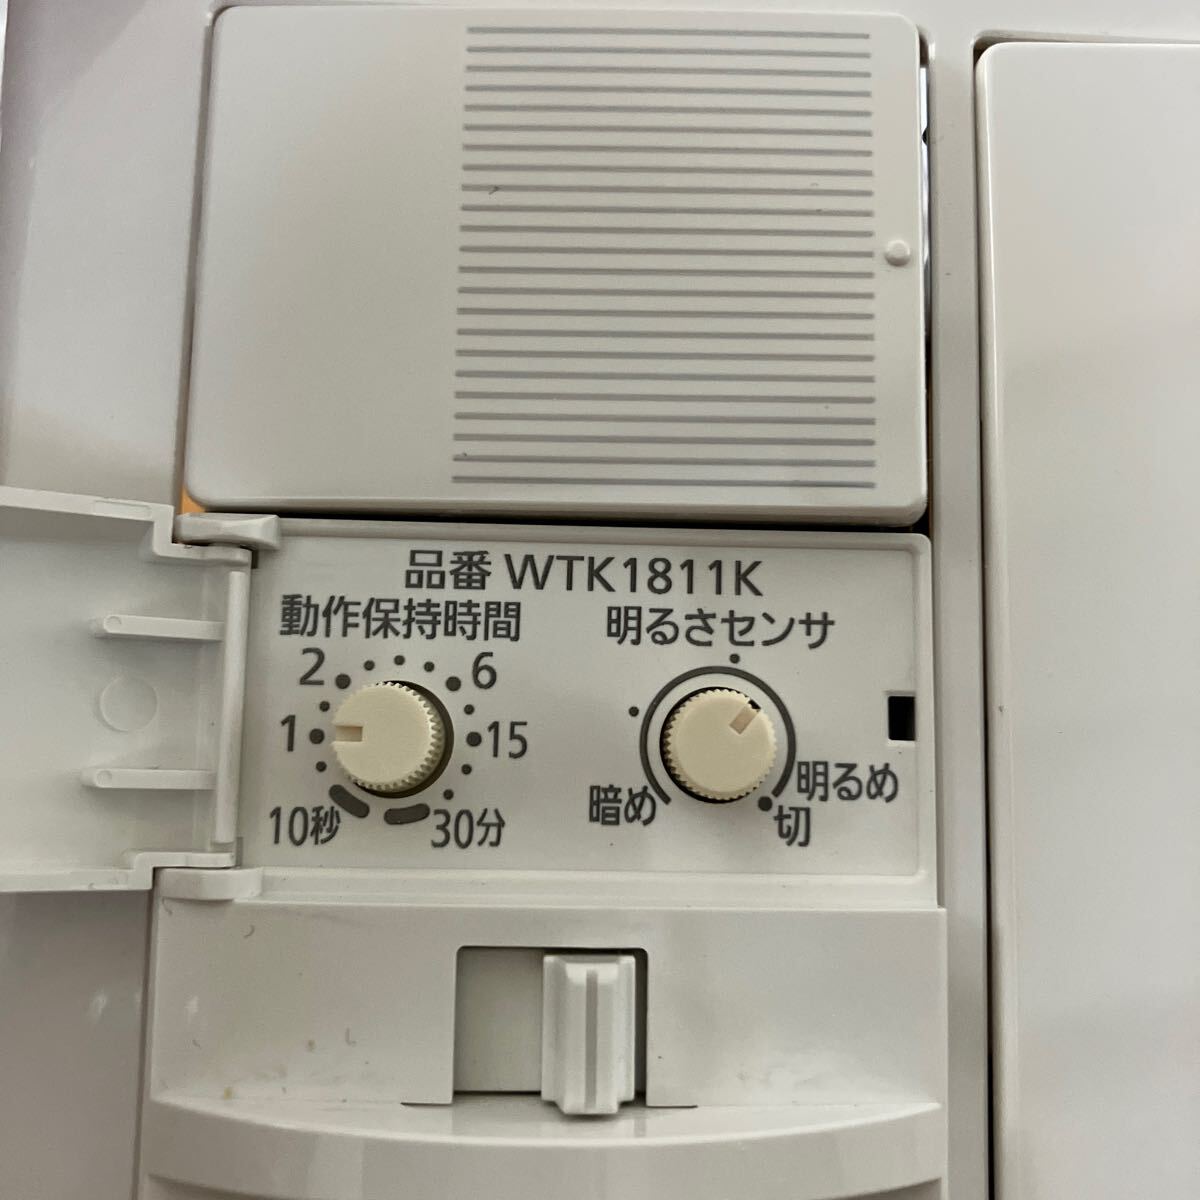 Panasonic WTK18115K 熱線センサ付自動スイッチ (照明器具用） 人感センサ スイッチ付き レターパックプラス発送の画像4